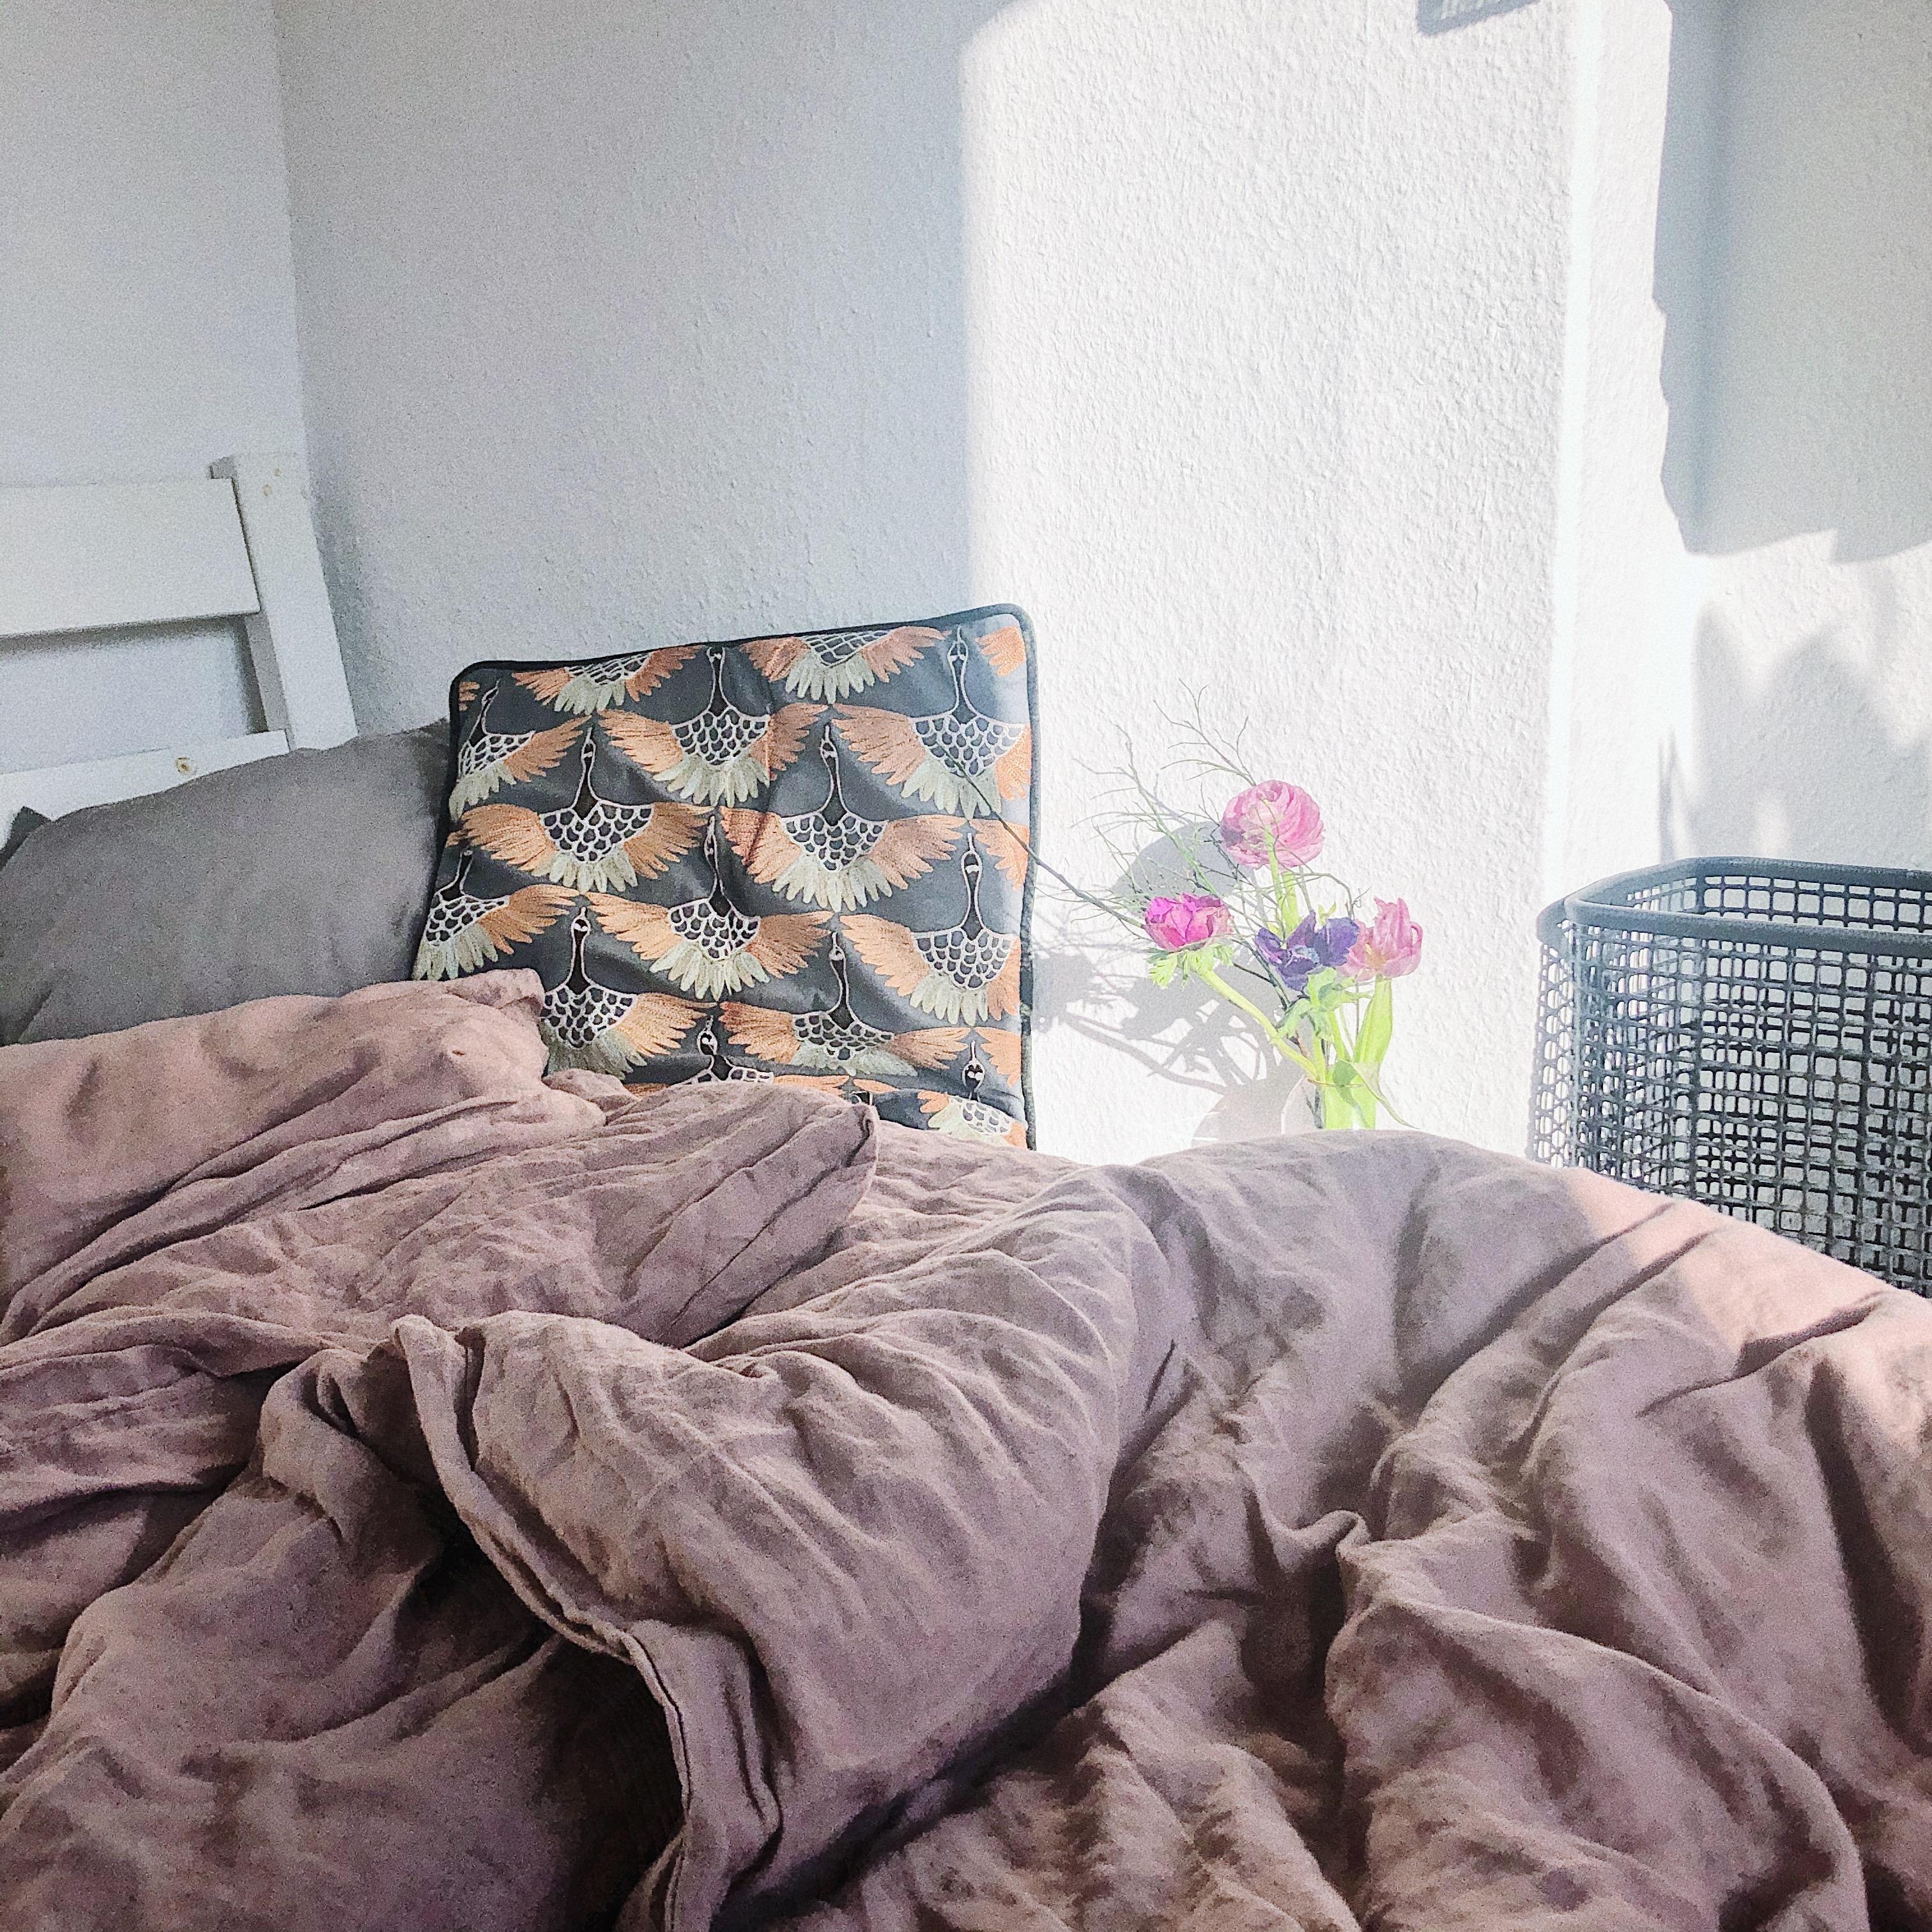 Guter Platz... 💫
#Schlafzimmer #Bett #Details #Blumen #Leinenbettwäsche